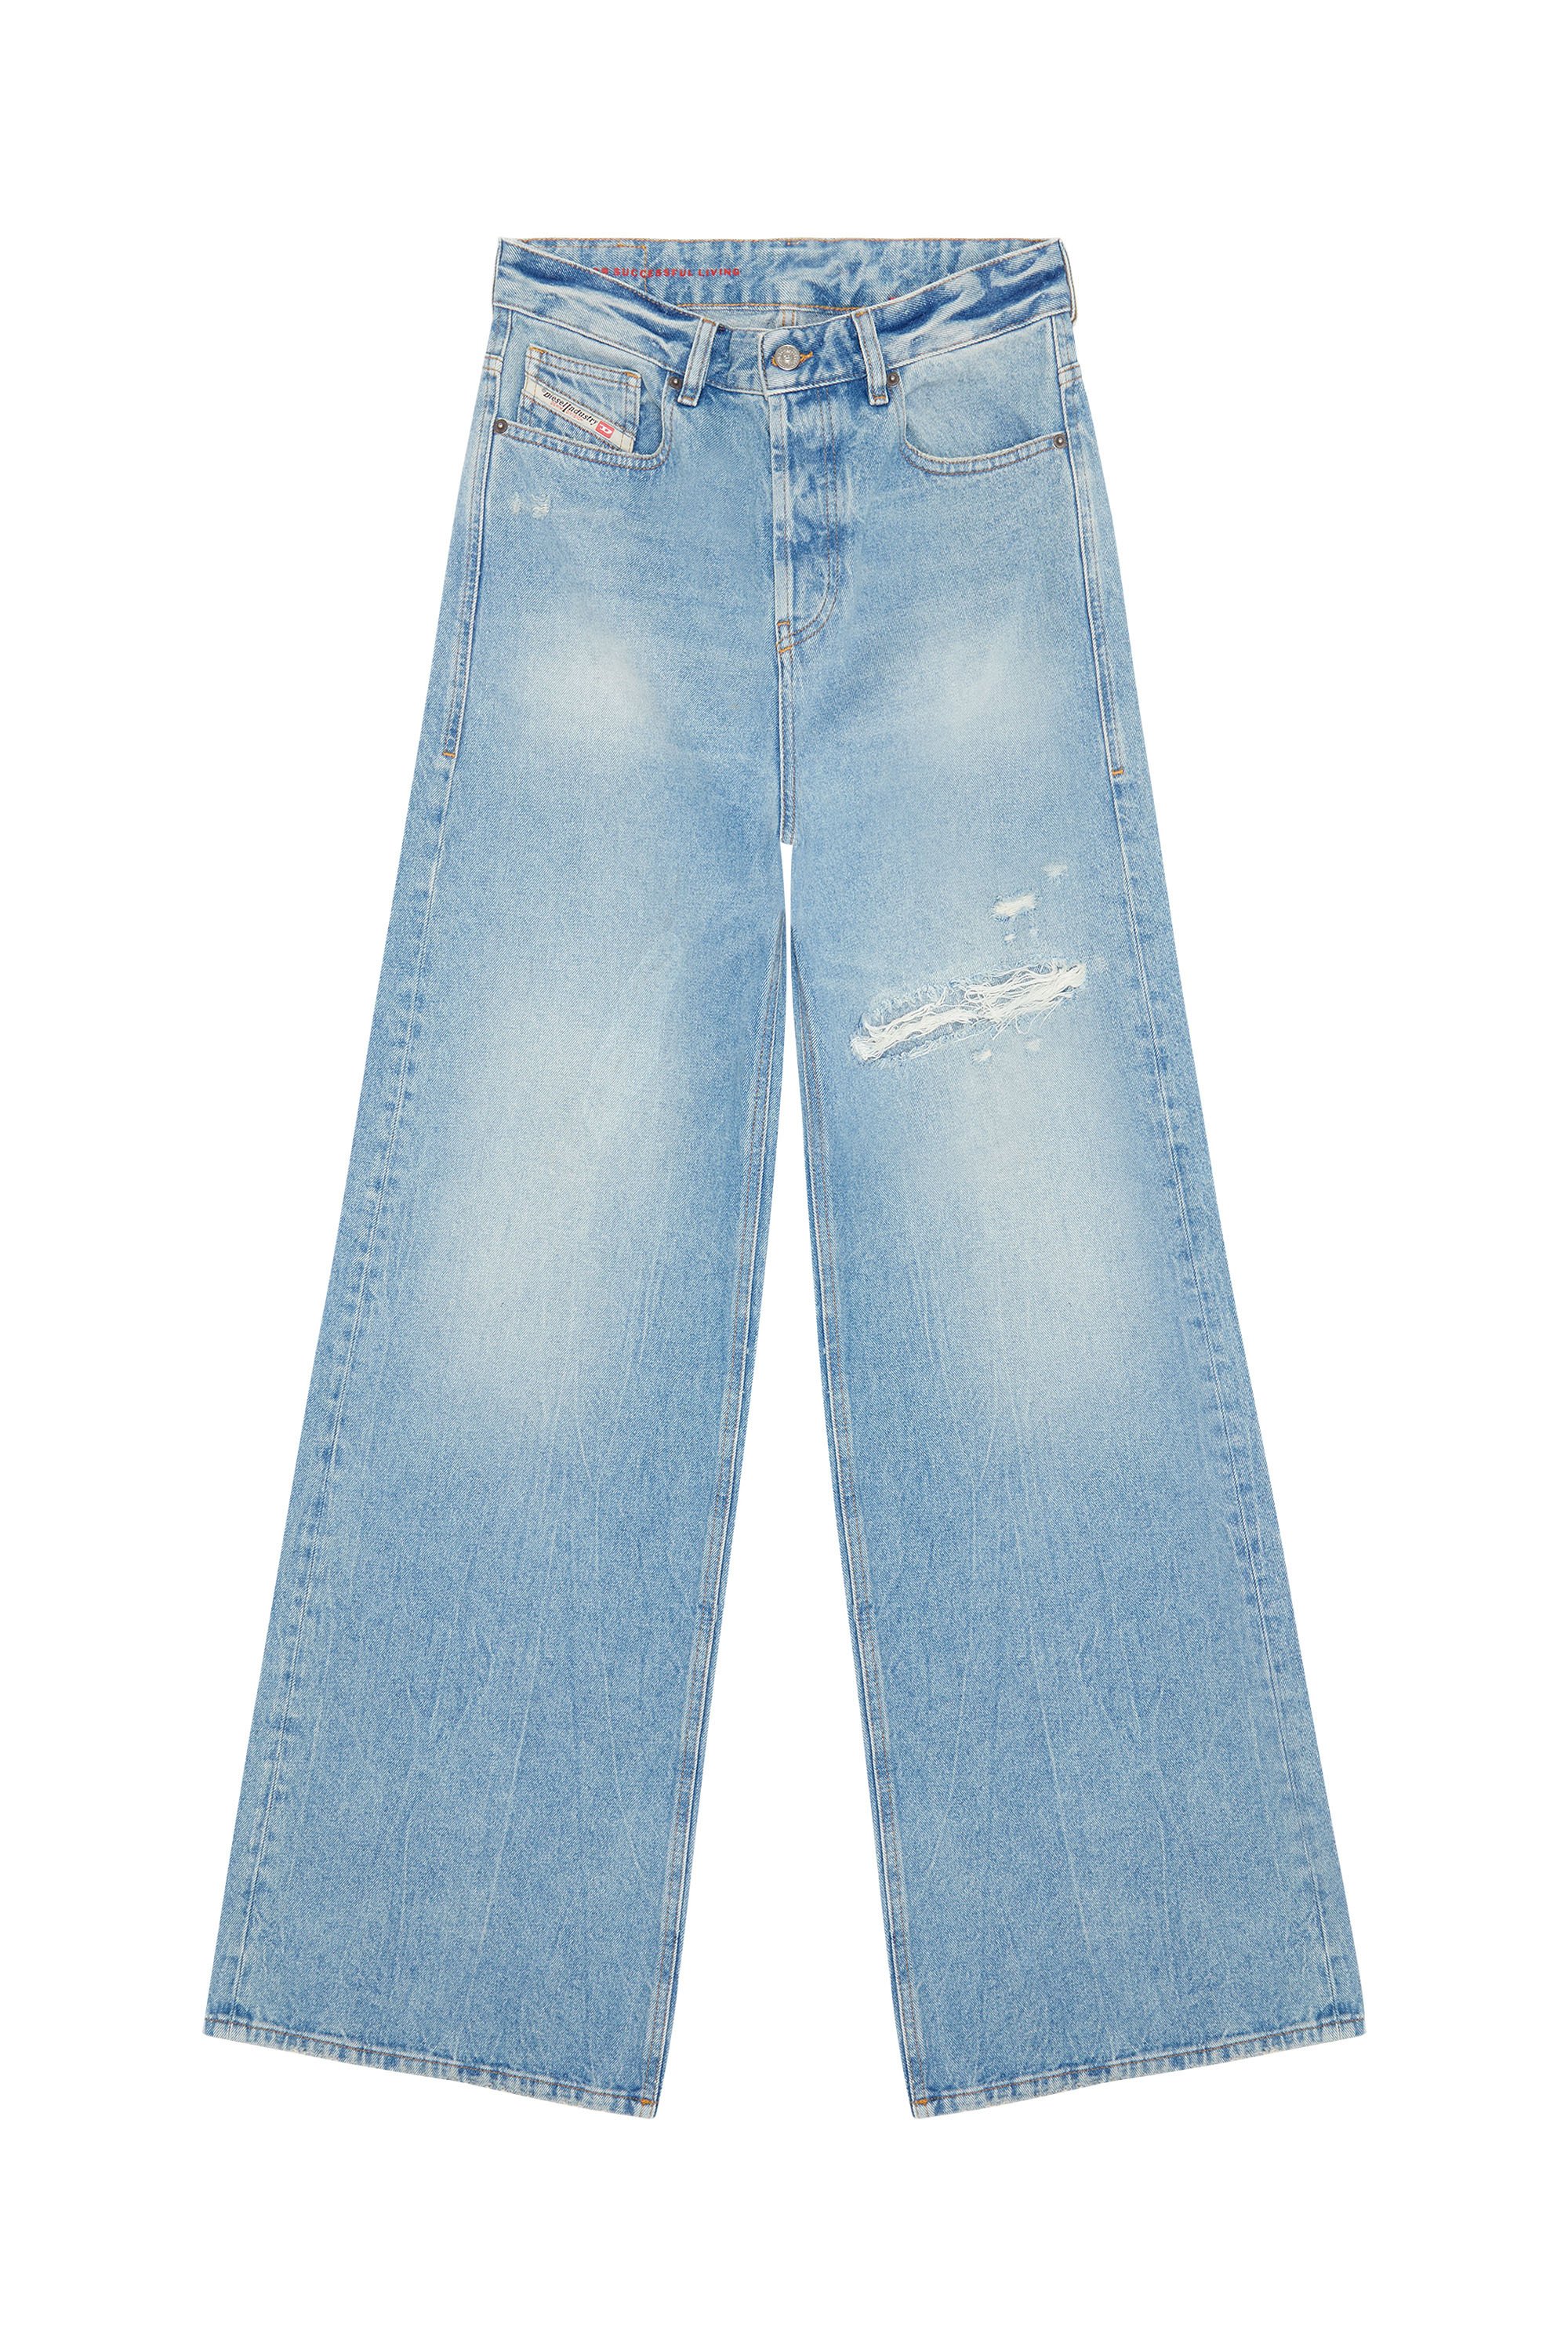 Diesel - Donna Straight Jeans 1996 D-Sire 09E25, Blu Chiaro - Image 7